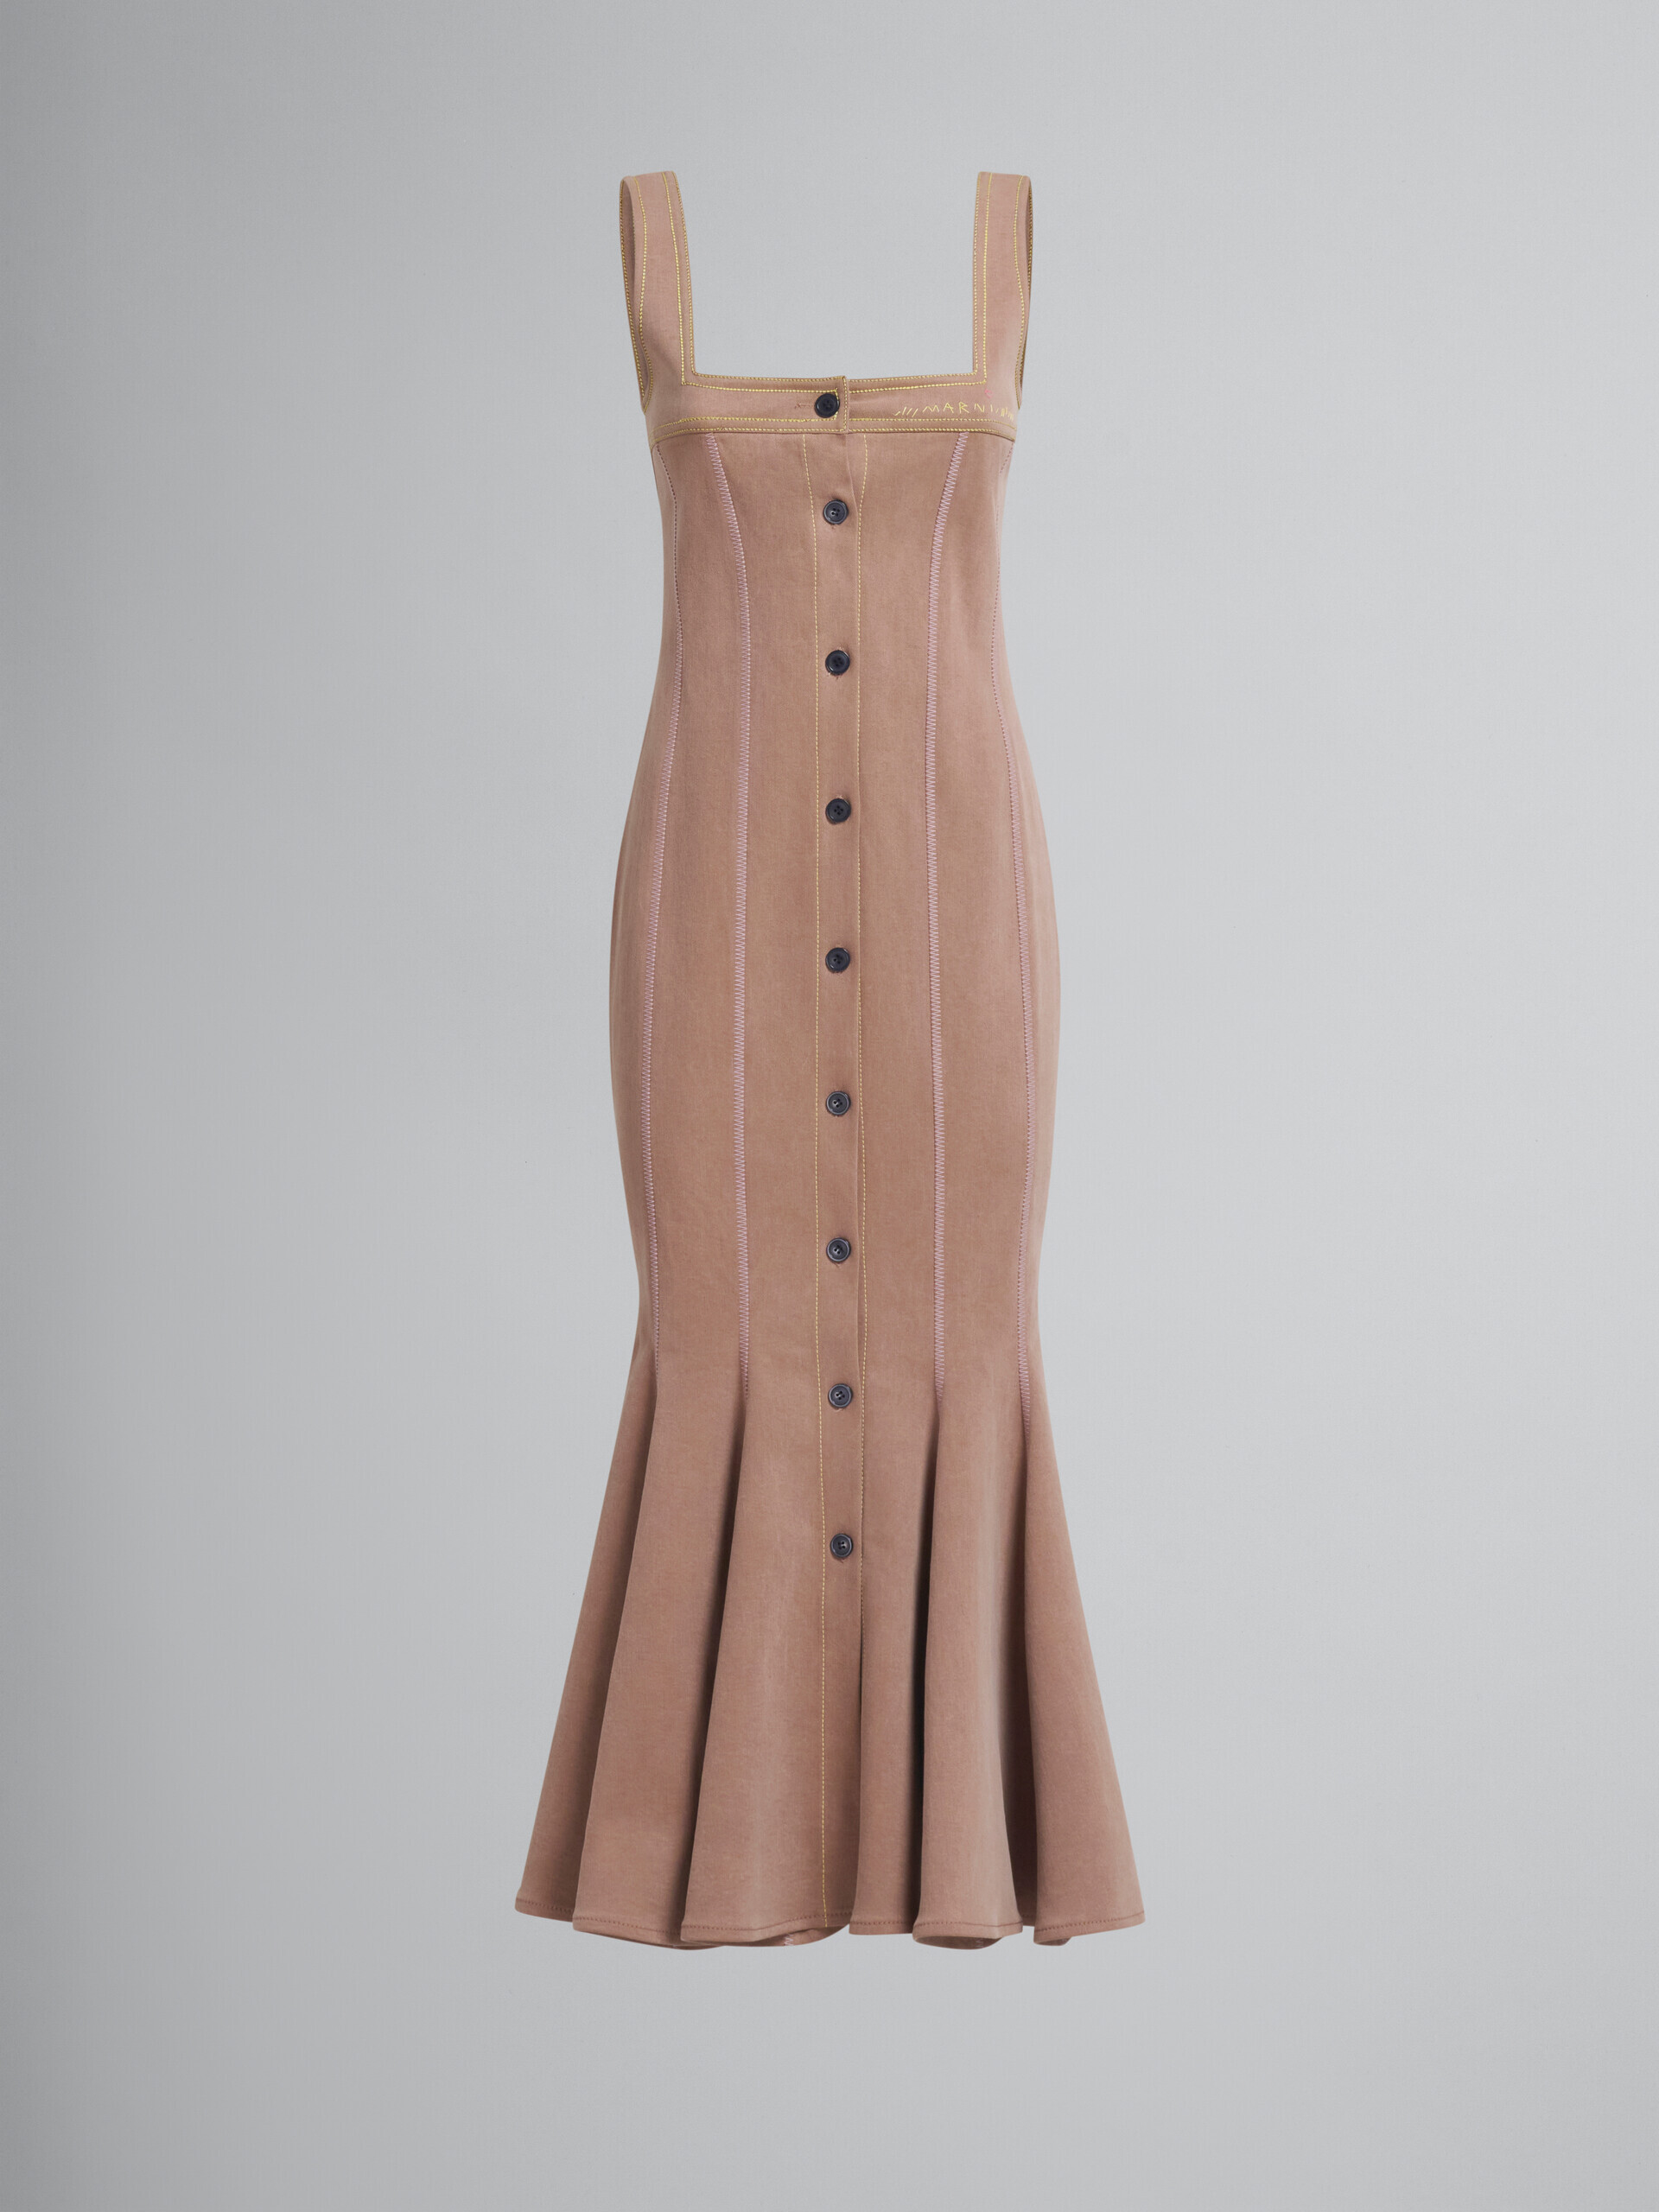 Robe sirène en denim organique marron avec coutures contrastées - Robes - Image 2